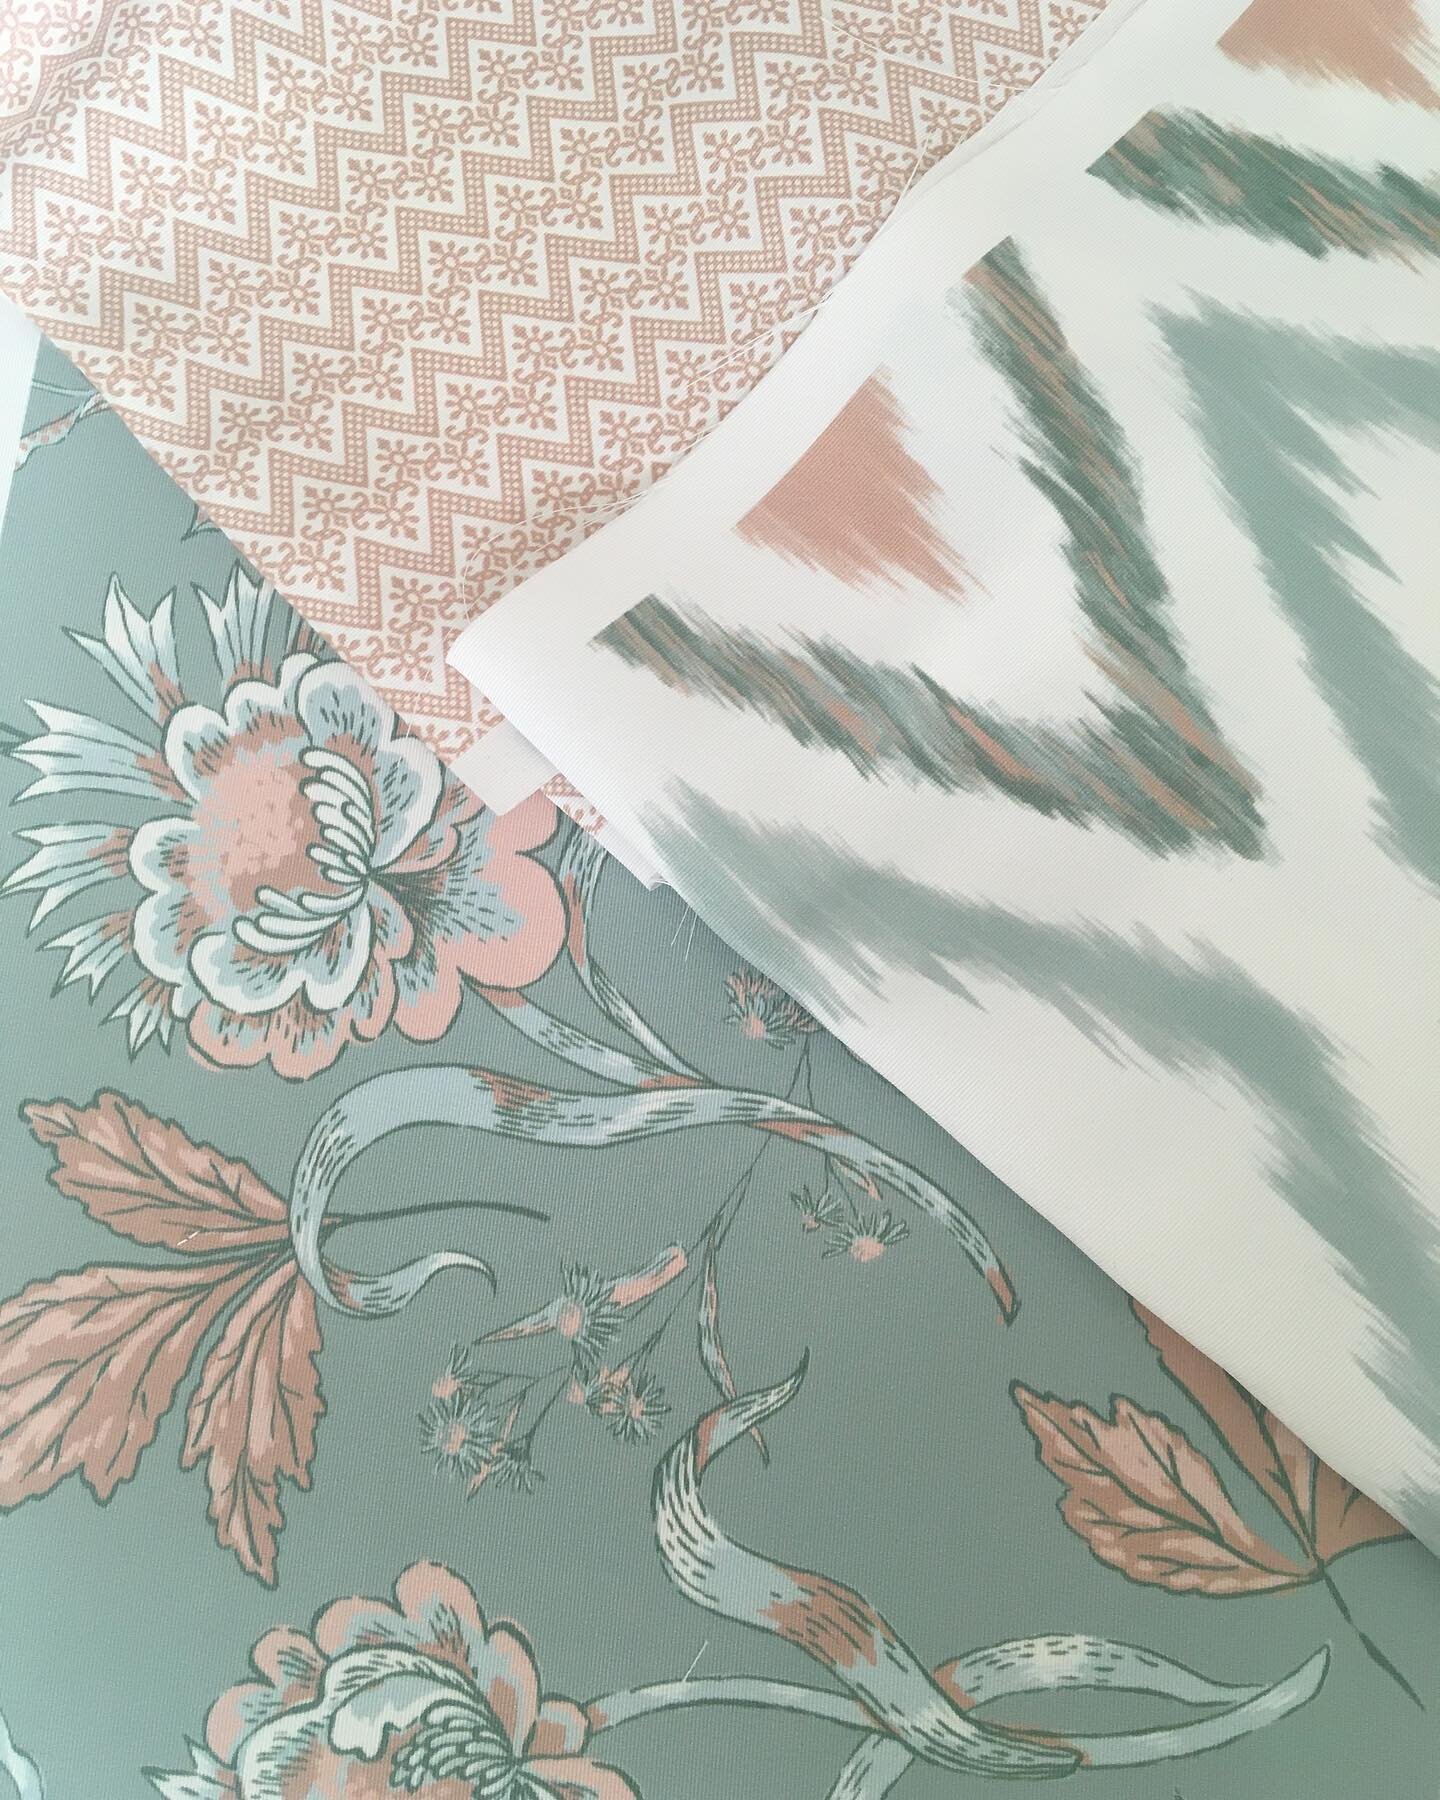 🤗 Zo leuk om mijn ontwerpen op deze proefdrukken te zien. Ze zijn goedgekeurd en zullen verschijnen op stoffen!! Zalig! 🍃🌸🍃#textieldesign #fabric #interiorfabrics #patterndesign #floralpattern